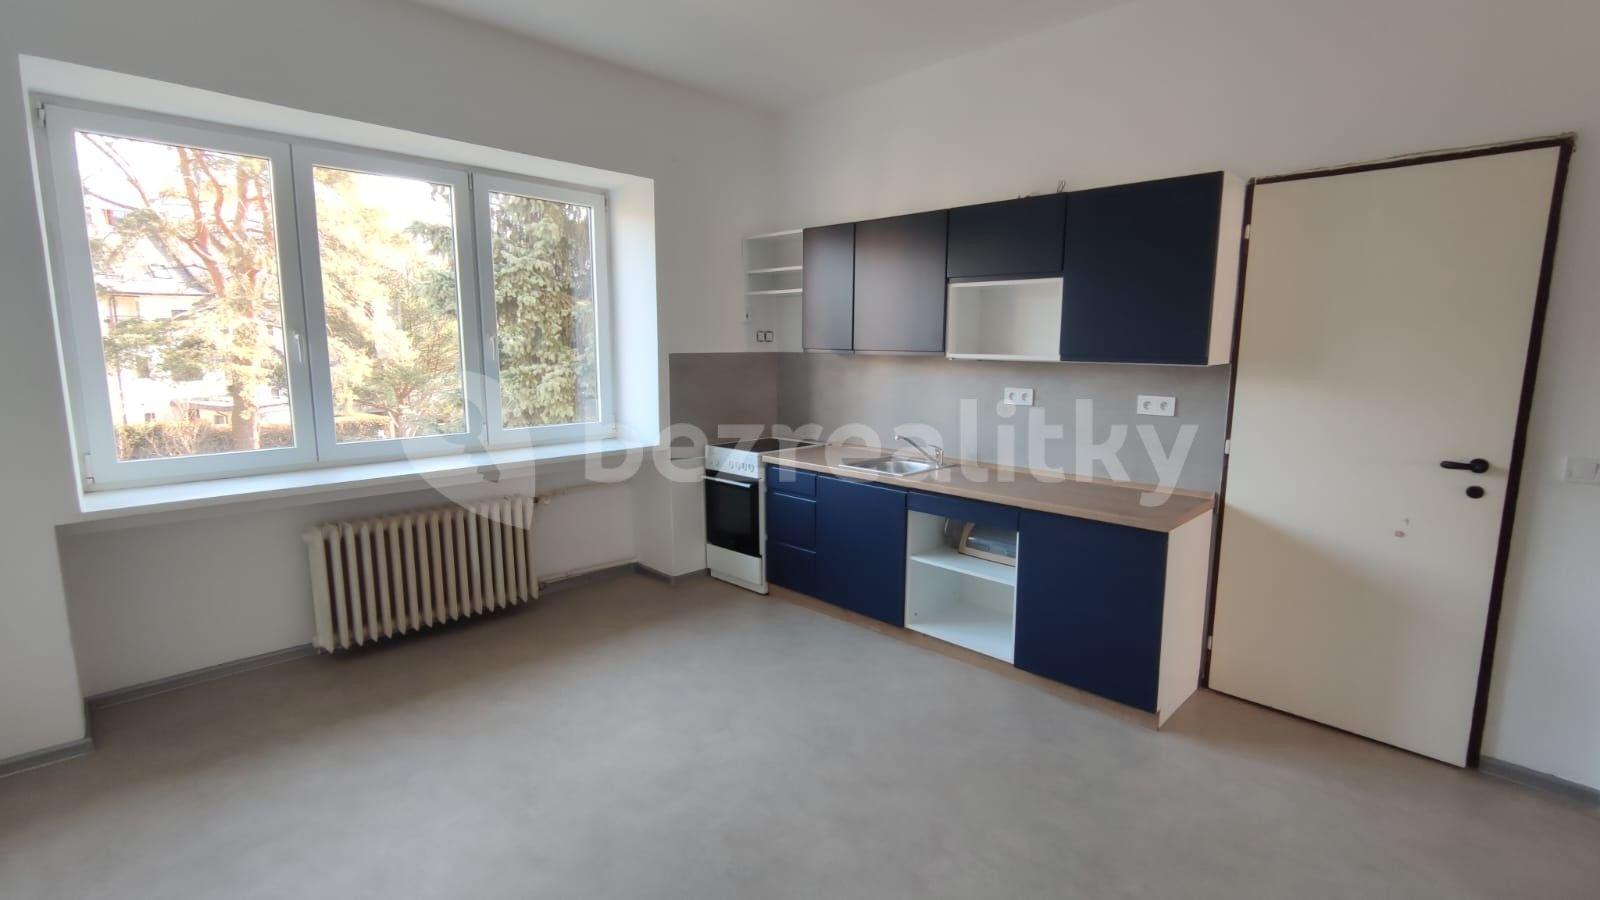 1 bedroom with open-plan kitchen flat to rent, 55 m², Č. Drahlovského, Přerov, Olomoucký Region